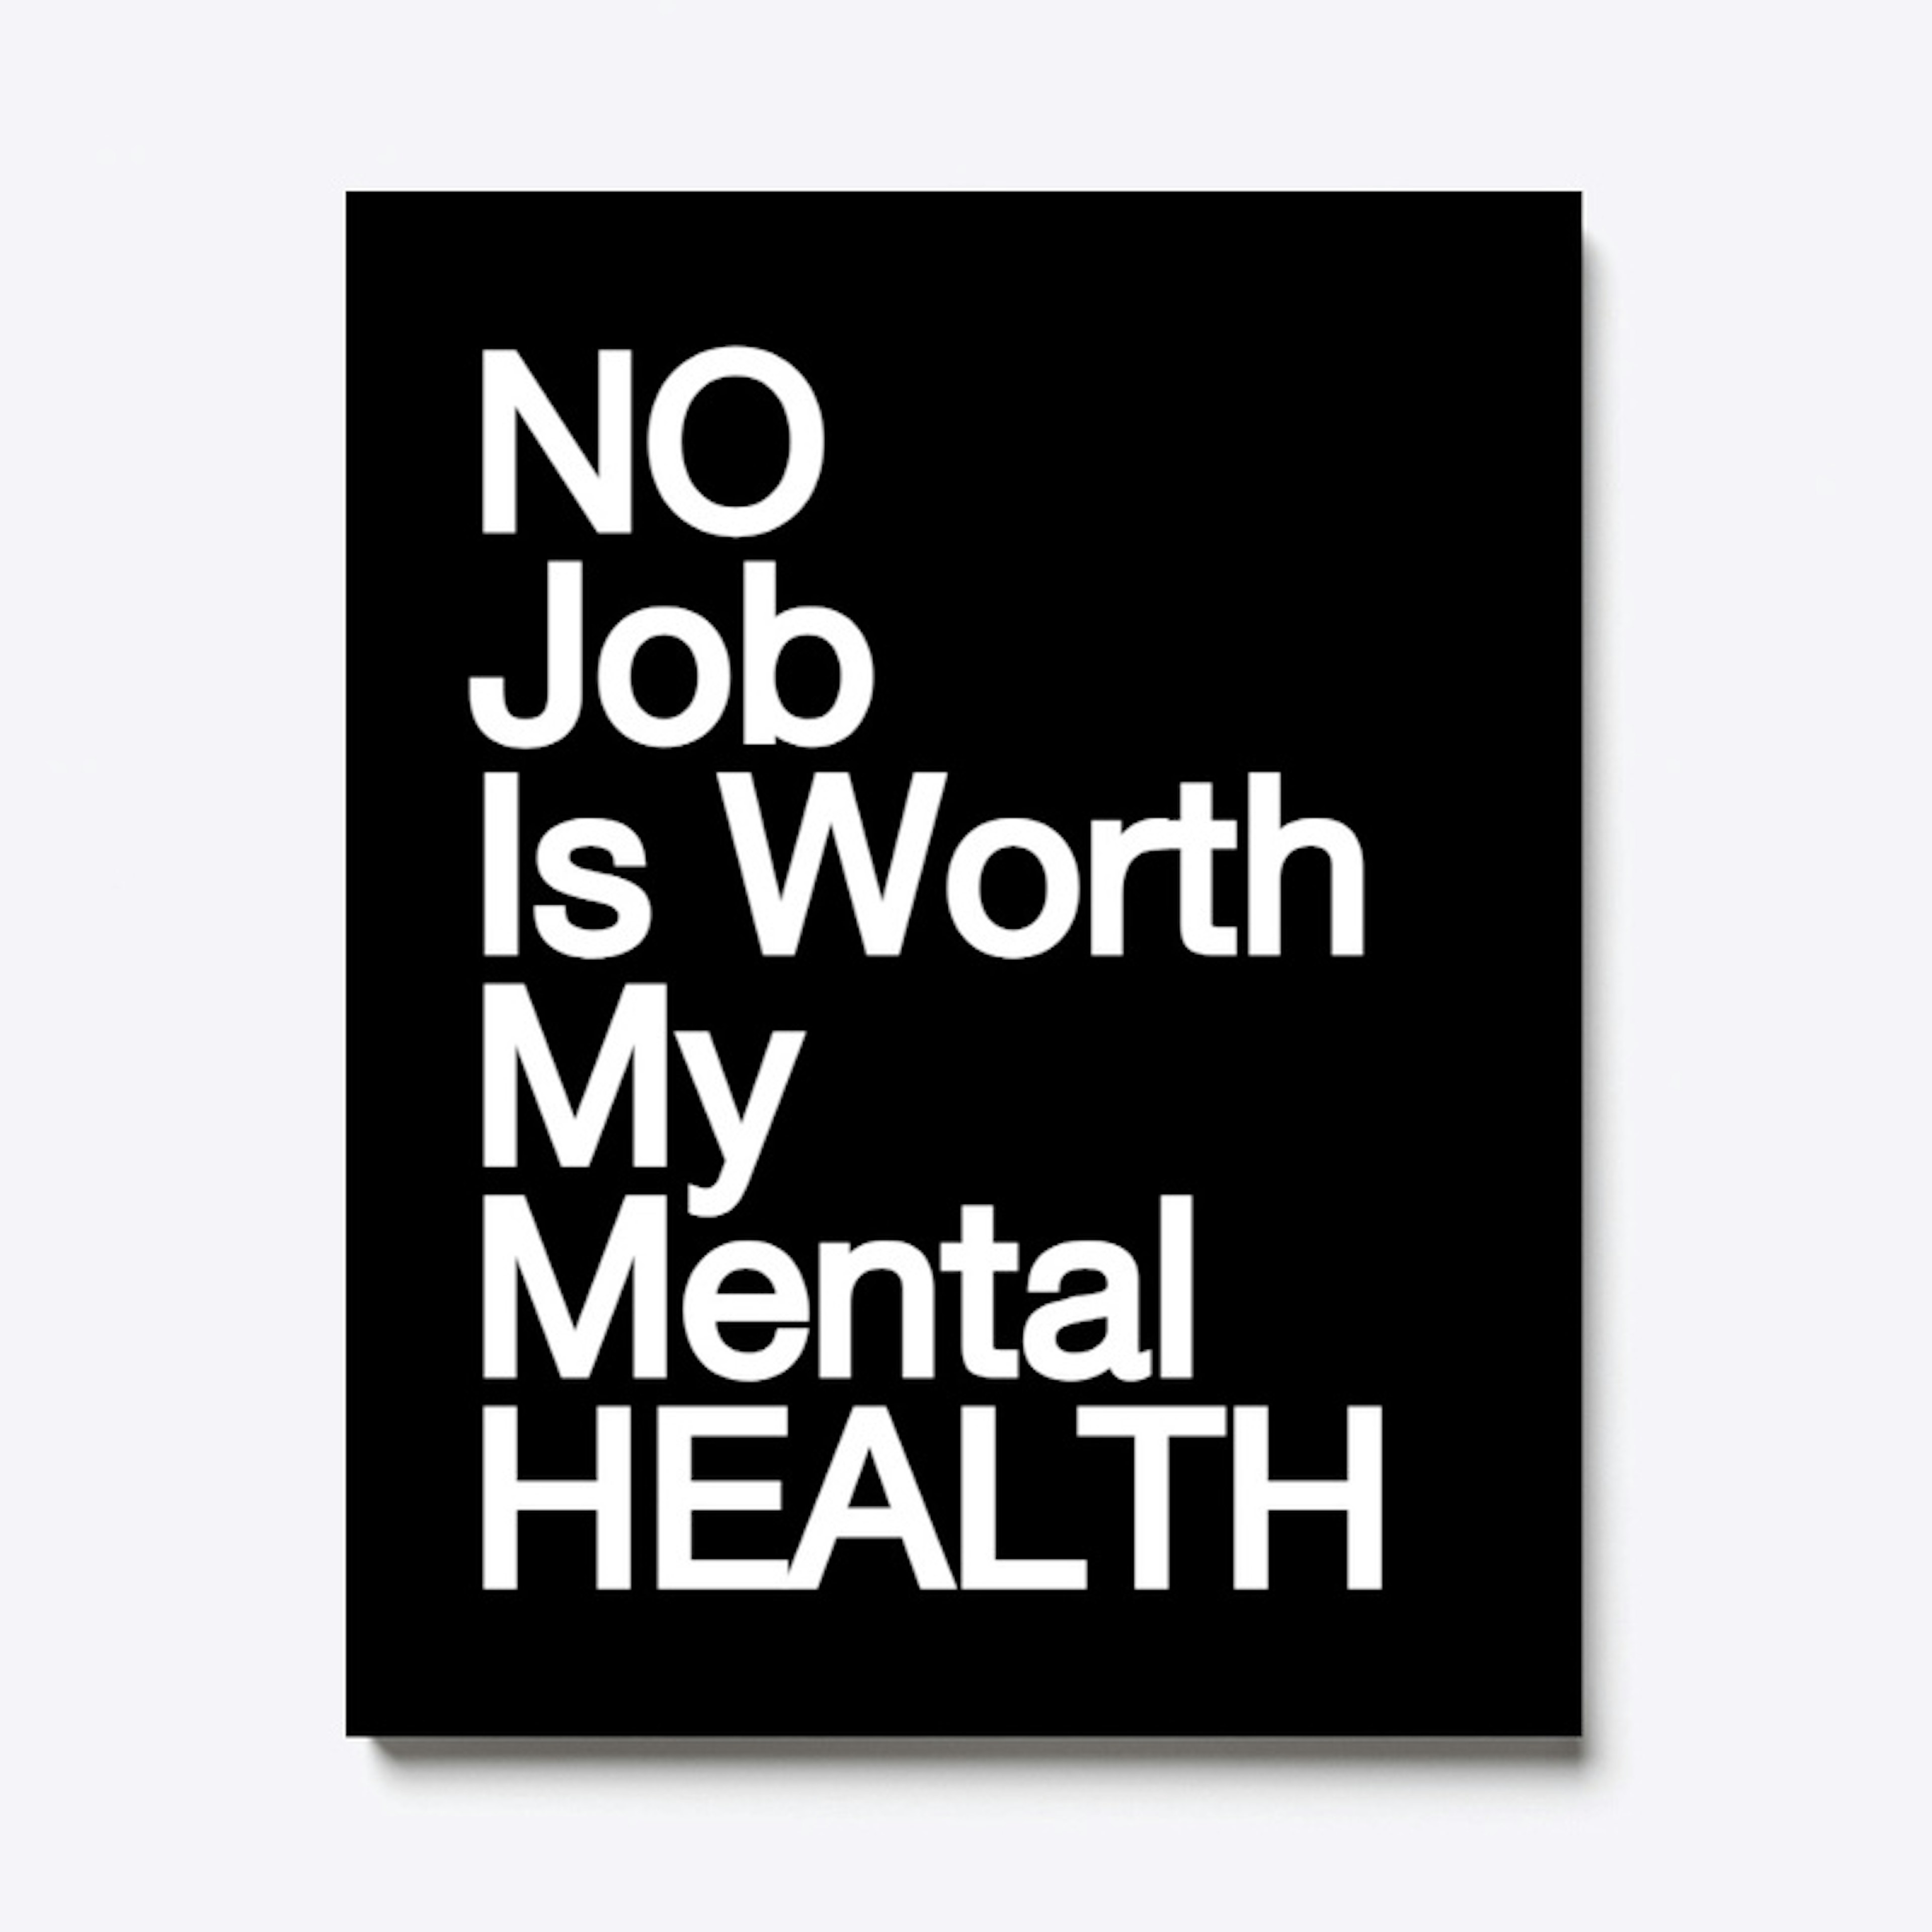 No Job/Mental Health T-shirt